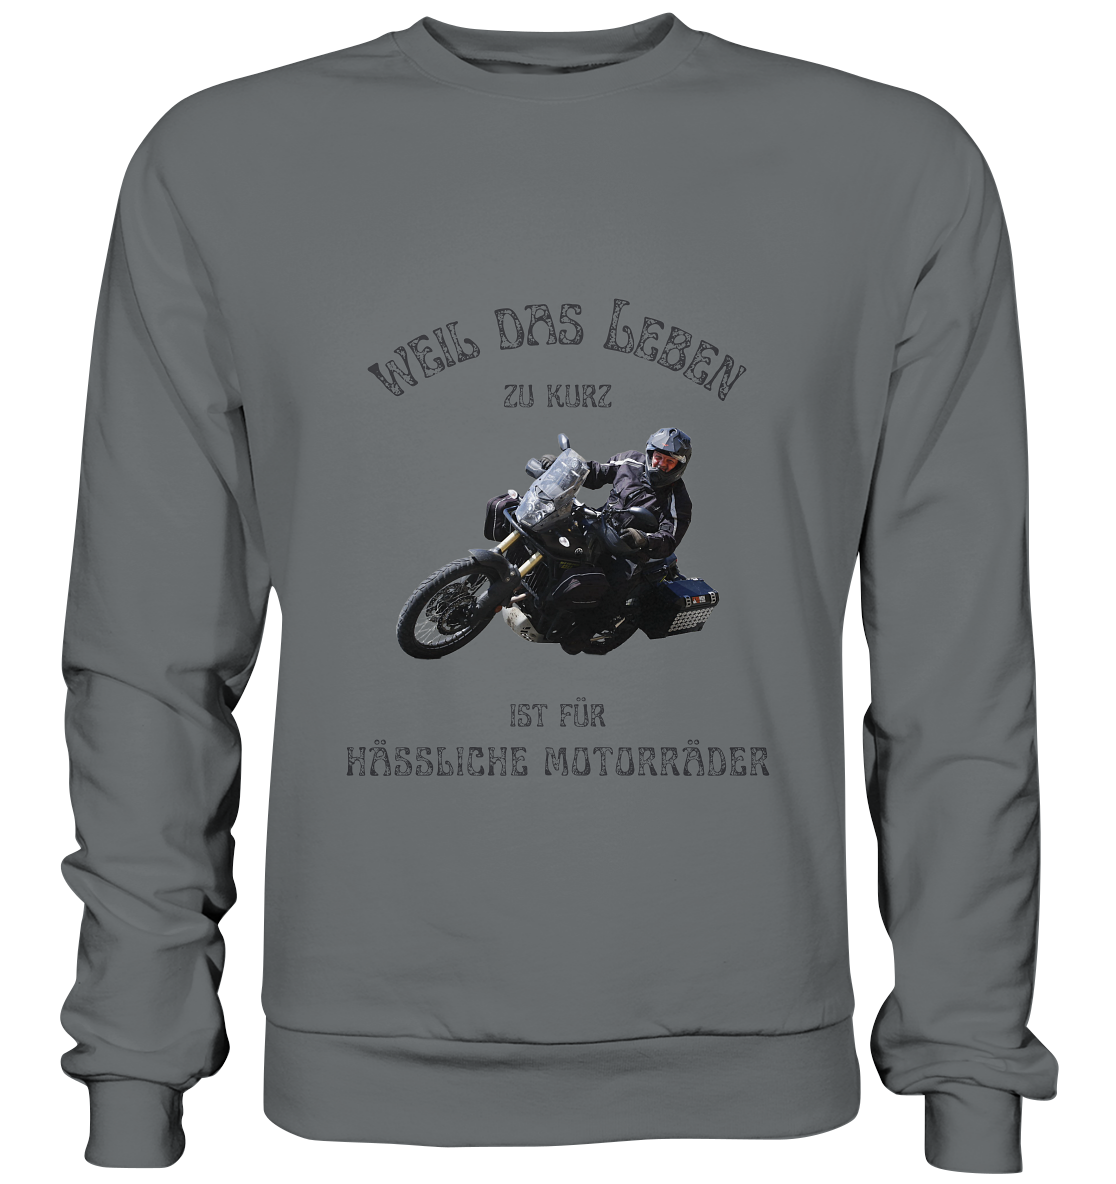 "Weil das Leben zu kurz ist für hässliche Motorräder" für Bernd | individualisiertes Sweatshirt mit Foto-Druck und Motorradspruch in dunklem Design